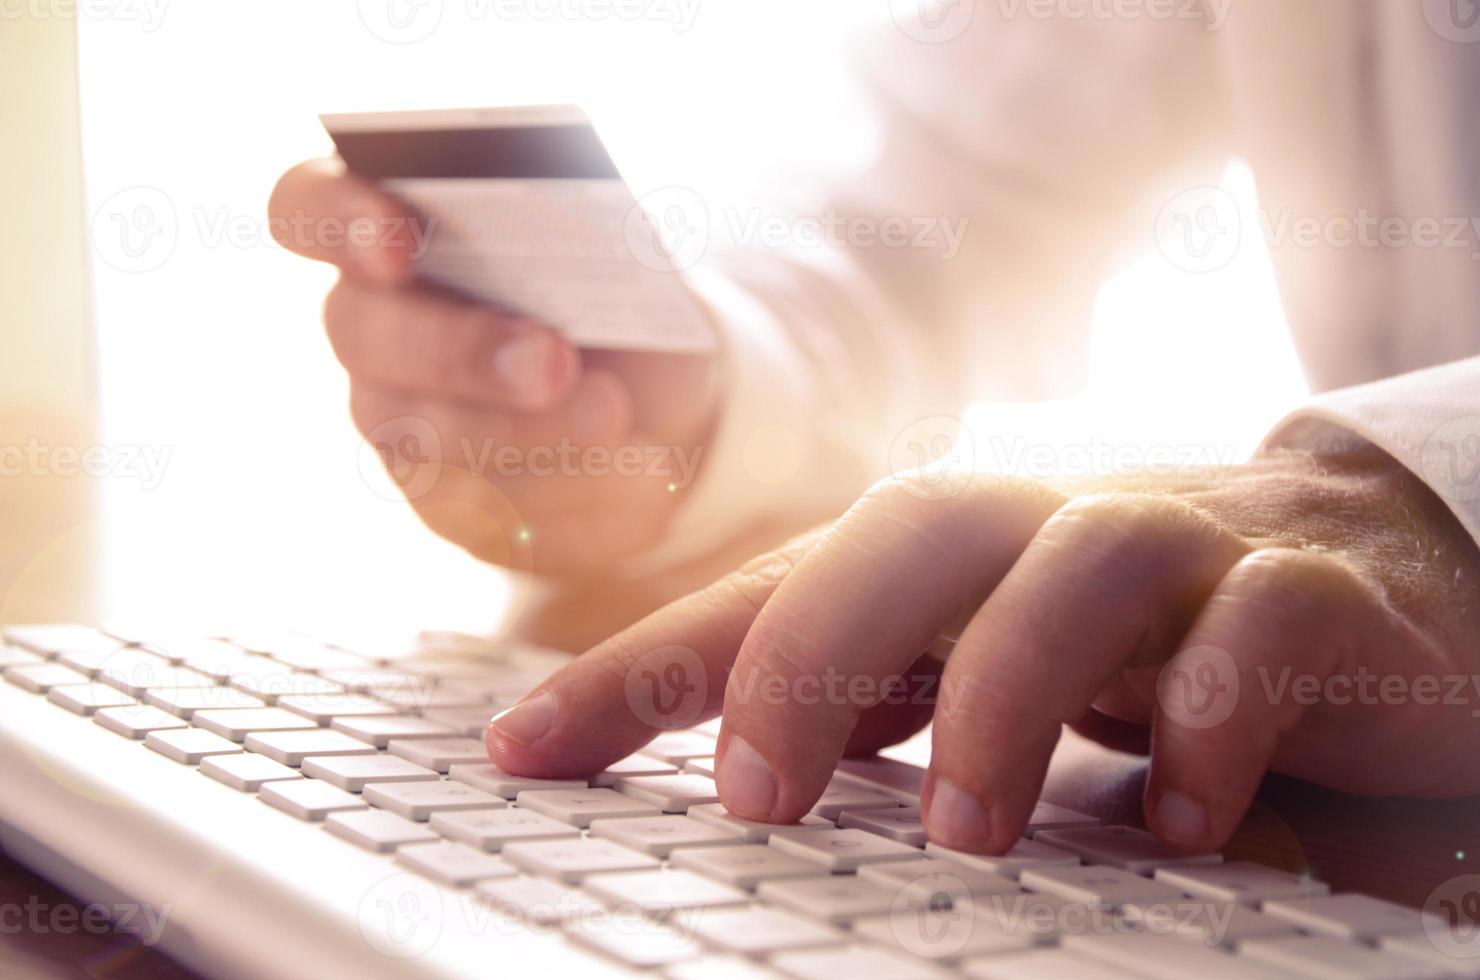 primer plano de las manos del hombre sosteniendo la tarjeta de crédito y usando el teclado de la computadora. concepto de comercio electrónico, compras en línea, banca electrónica, seguridad en Internet. foto